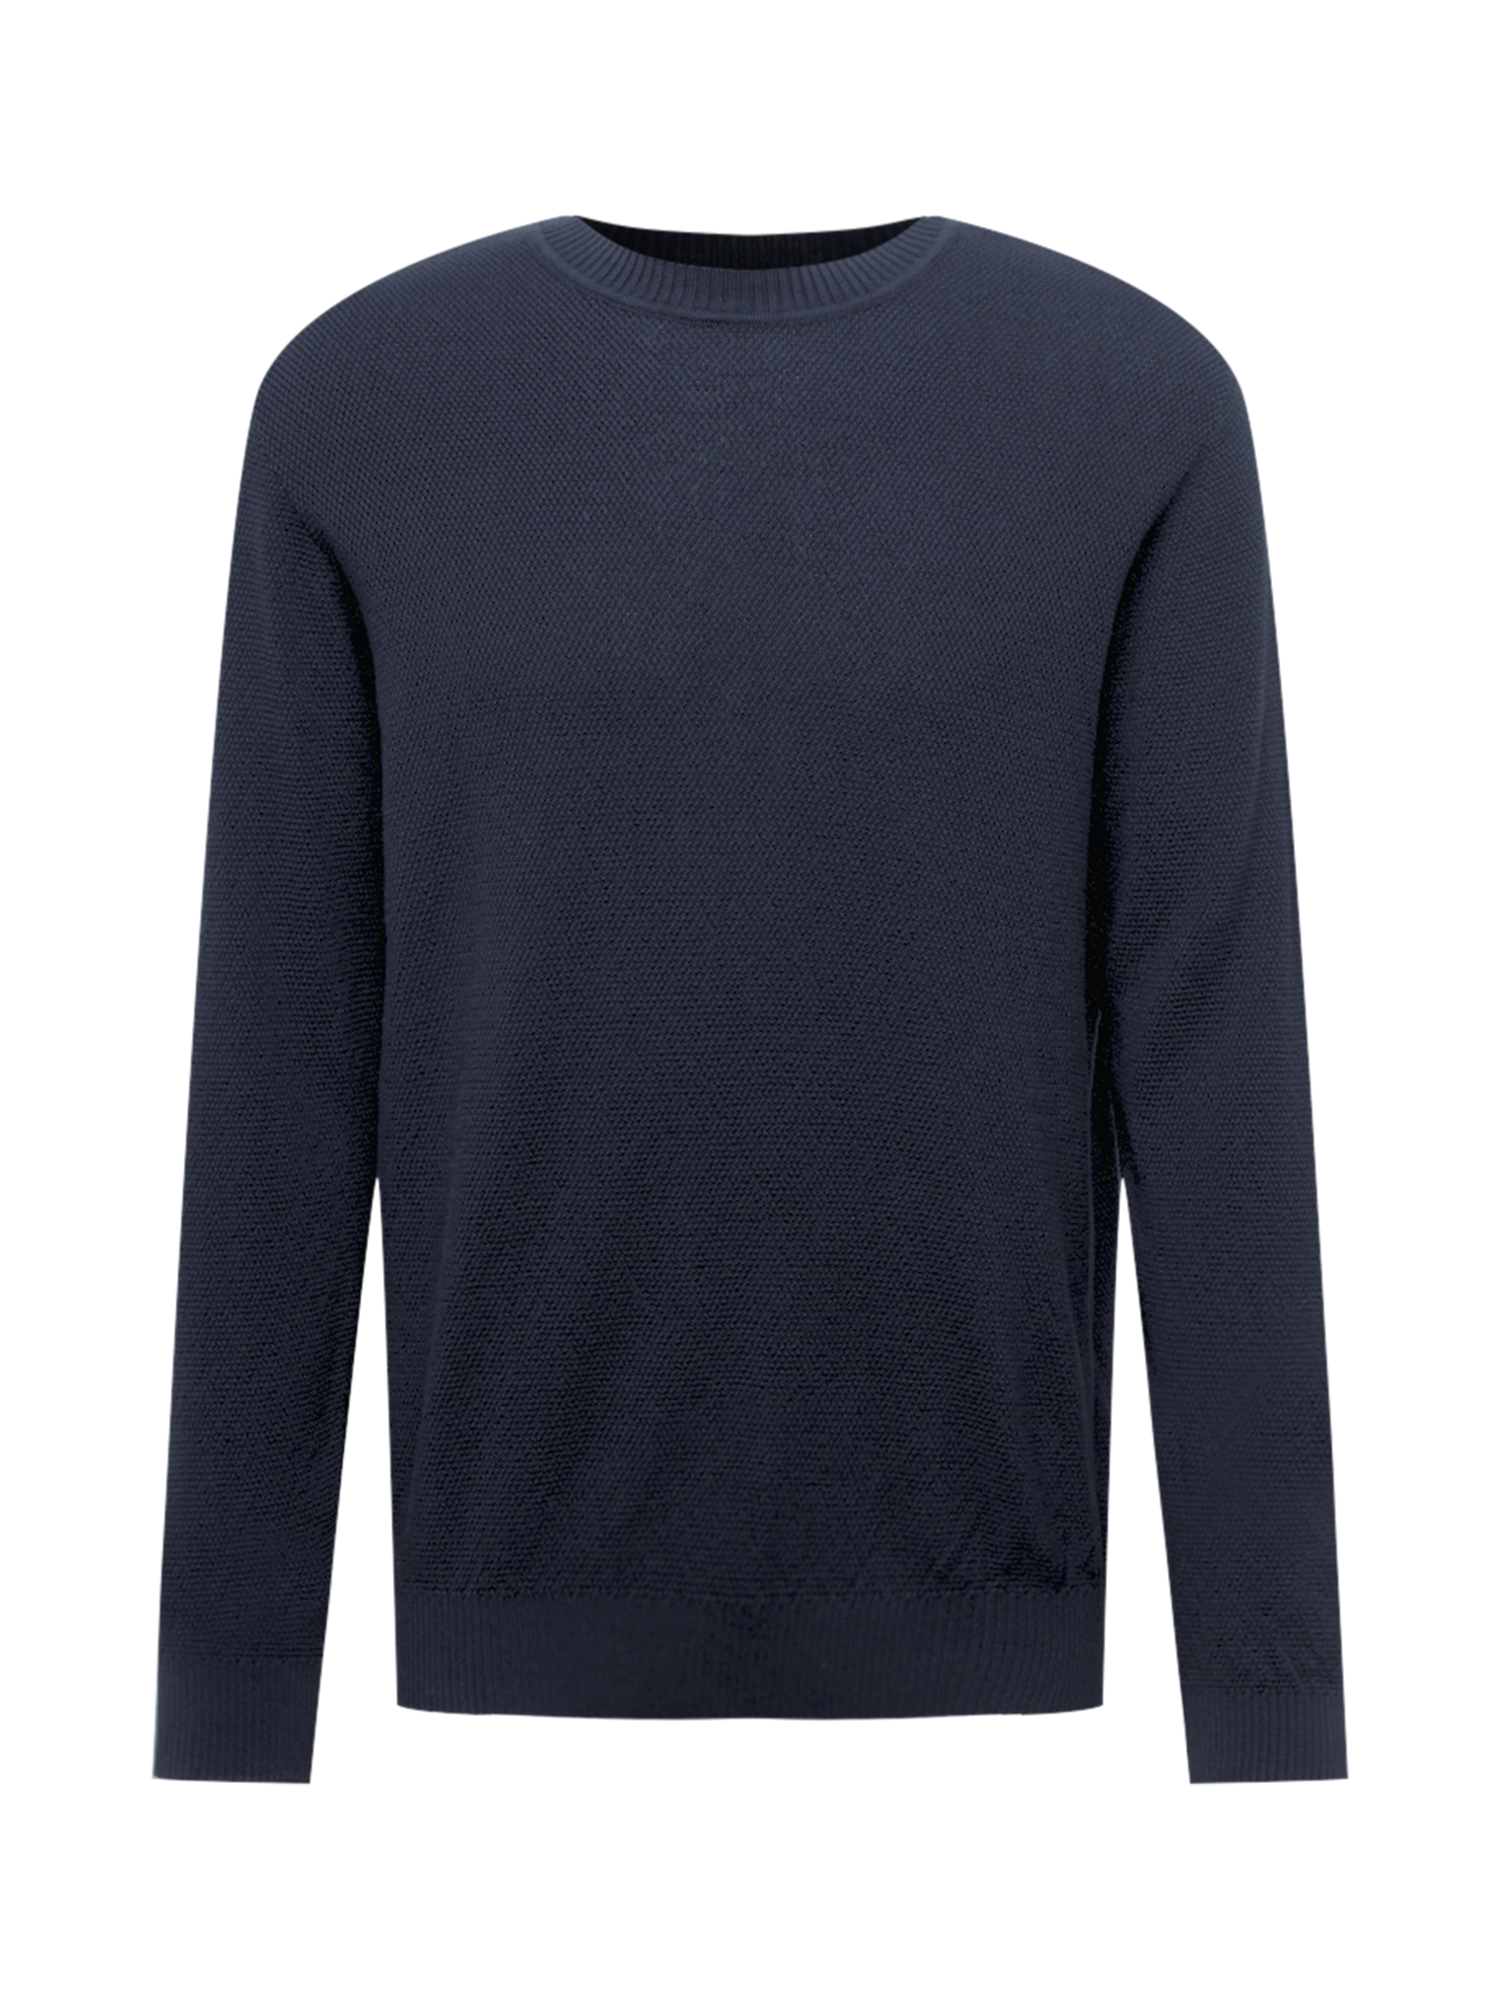 Swetry & kardigany 0Lpc6 By Garment Makers Sweter Theo w kolorze Granatowym 